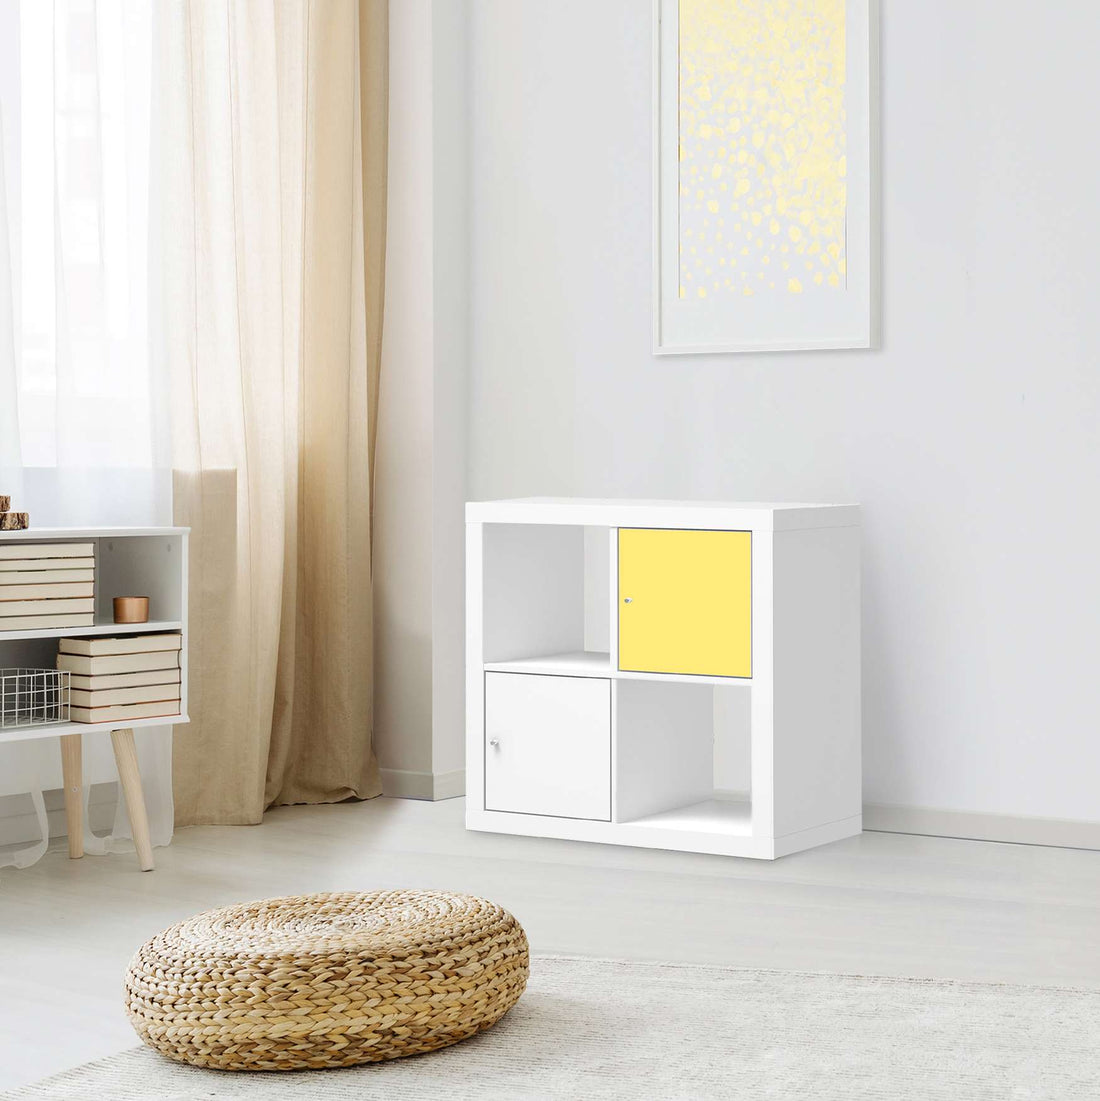 Klebefolie Gelb Light - IKEA Expedit Regal Tür einzeln - Wohnzimmer